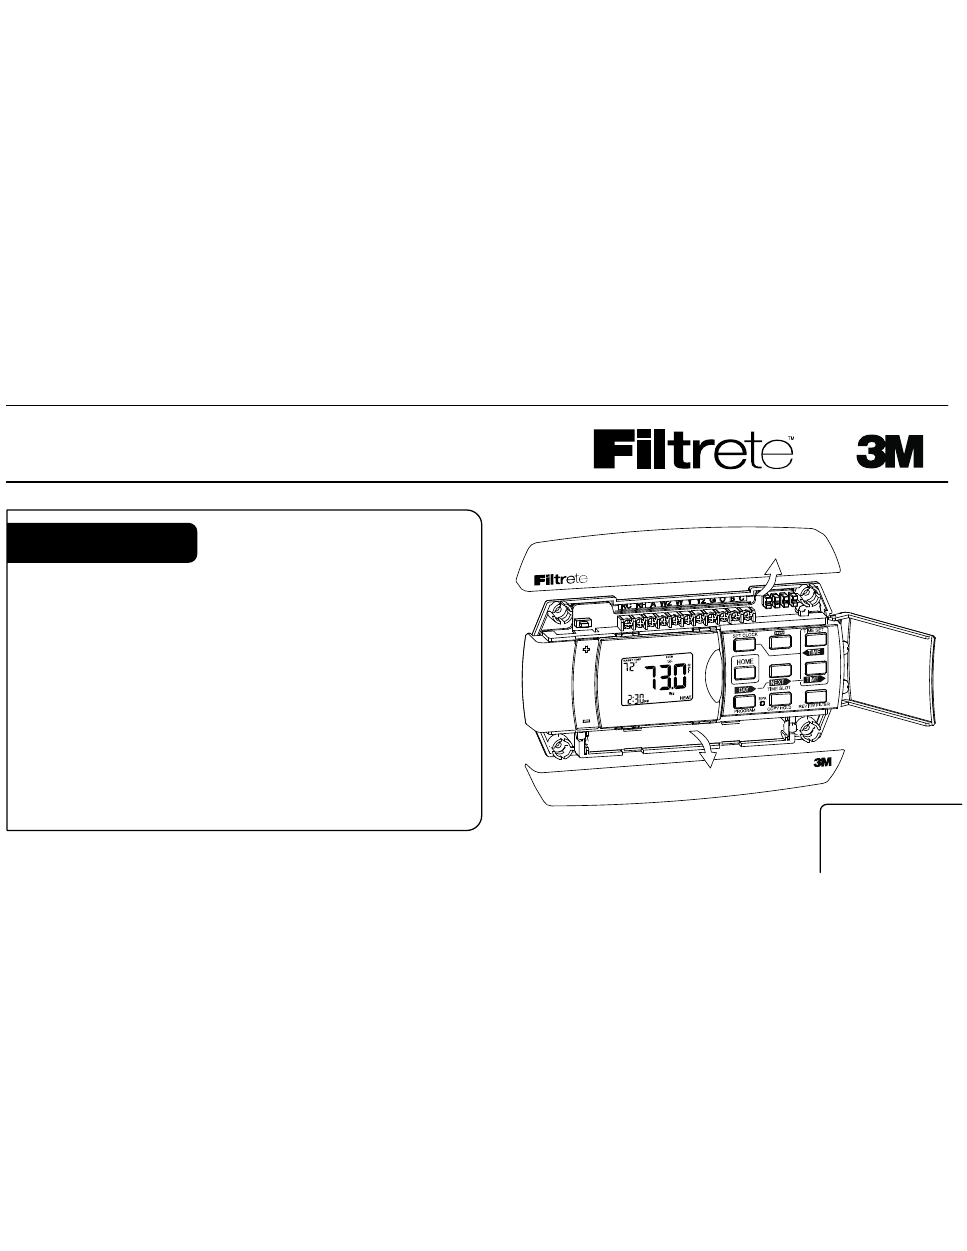 3m filtrete wifi thermostat user manual